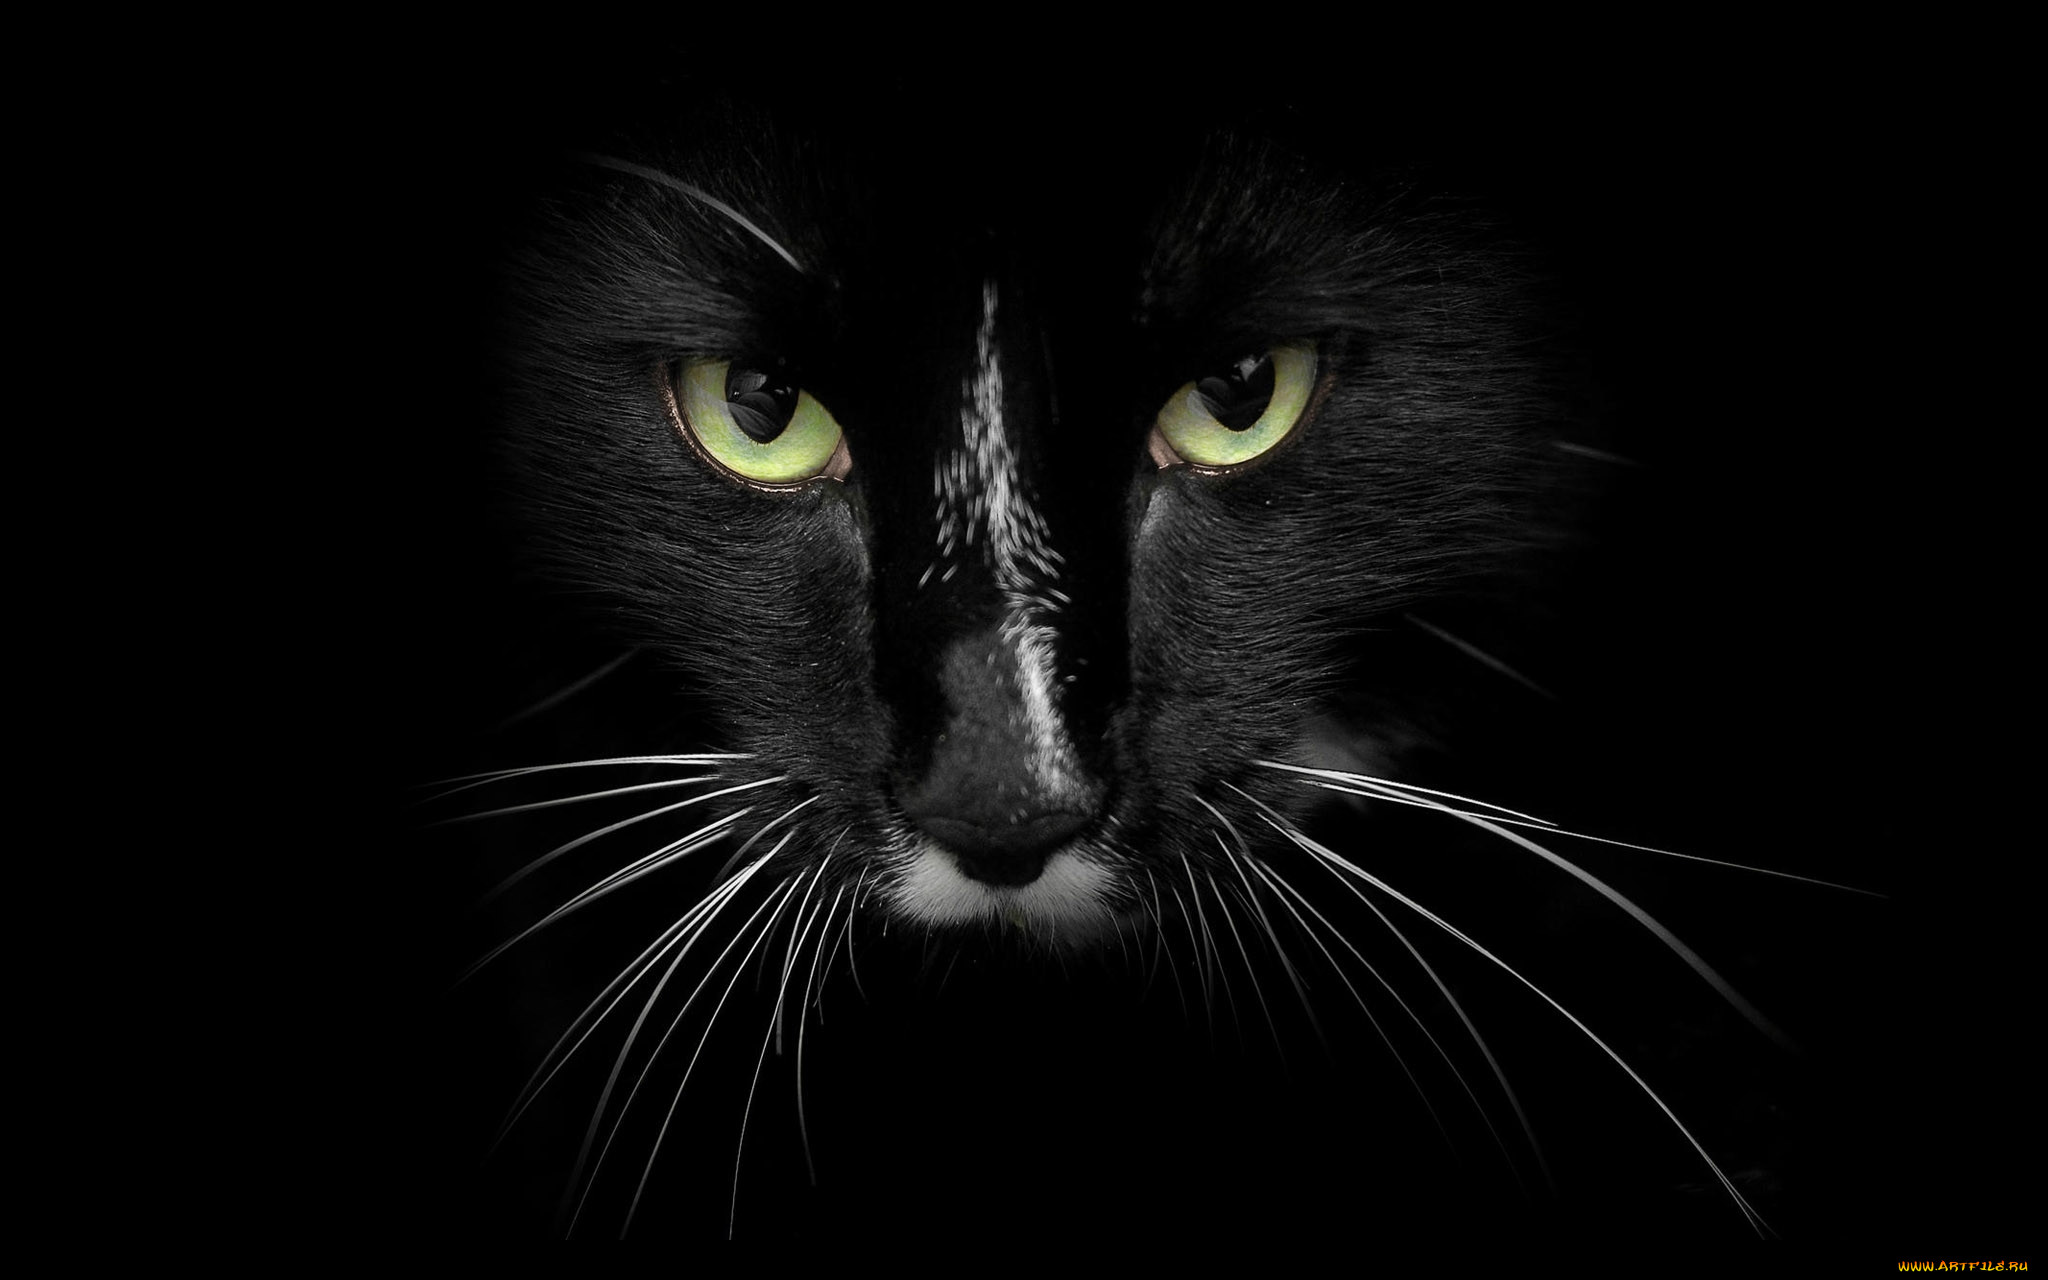 Заставка черный фон. Чёрный кот. Черный фон. Морда черного кота. Кошачьи глаза на черном фоне.